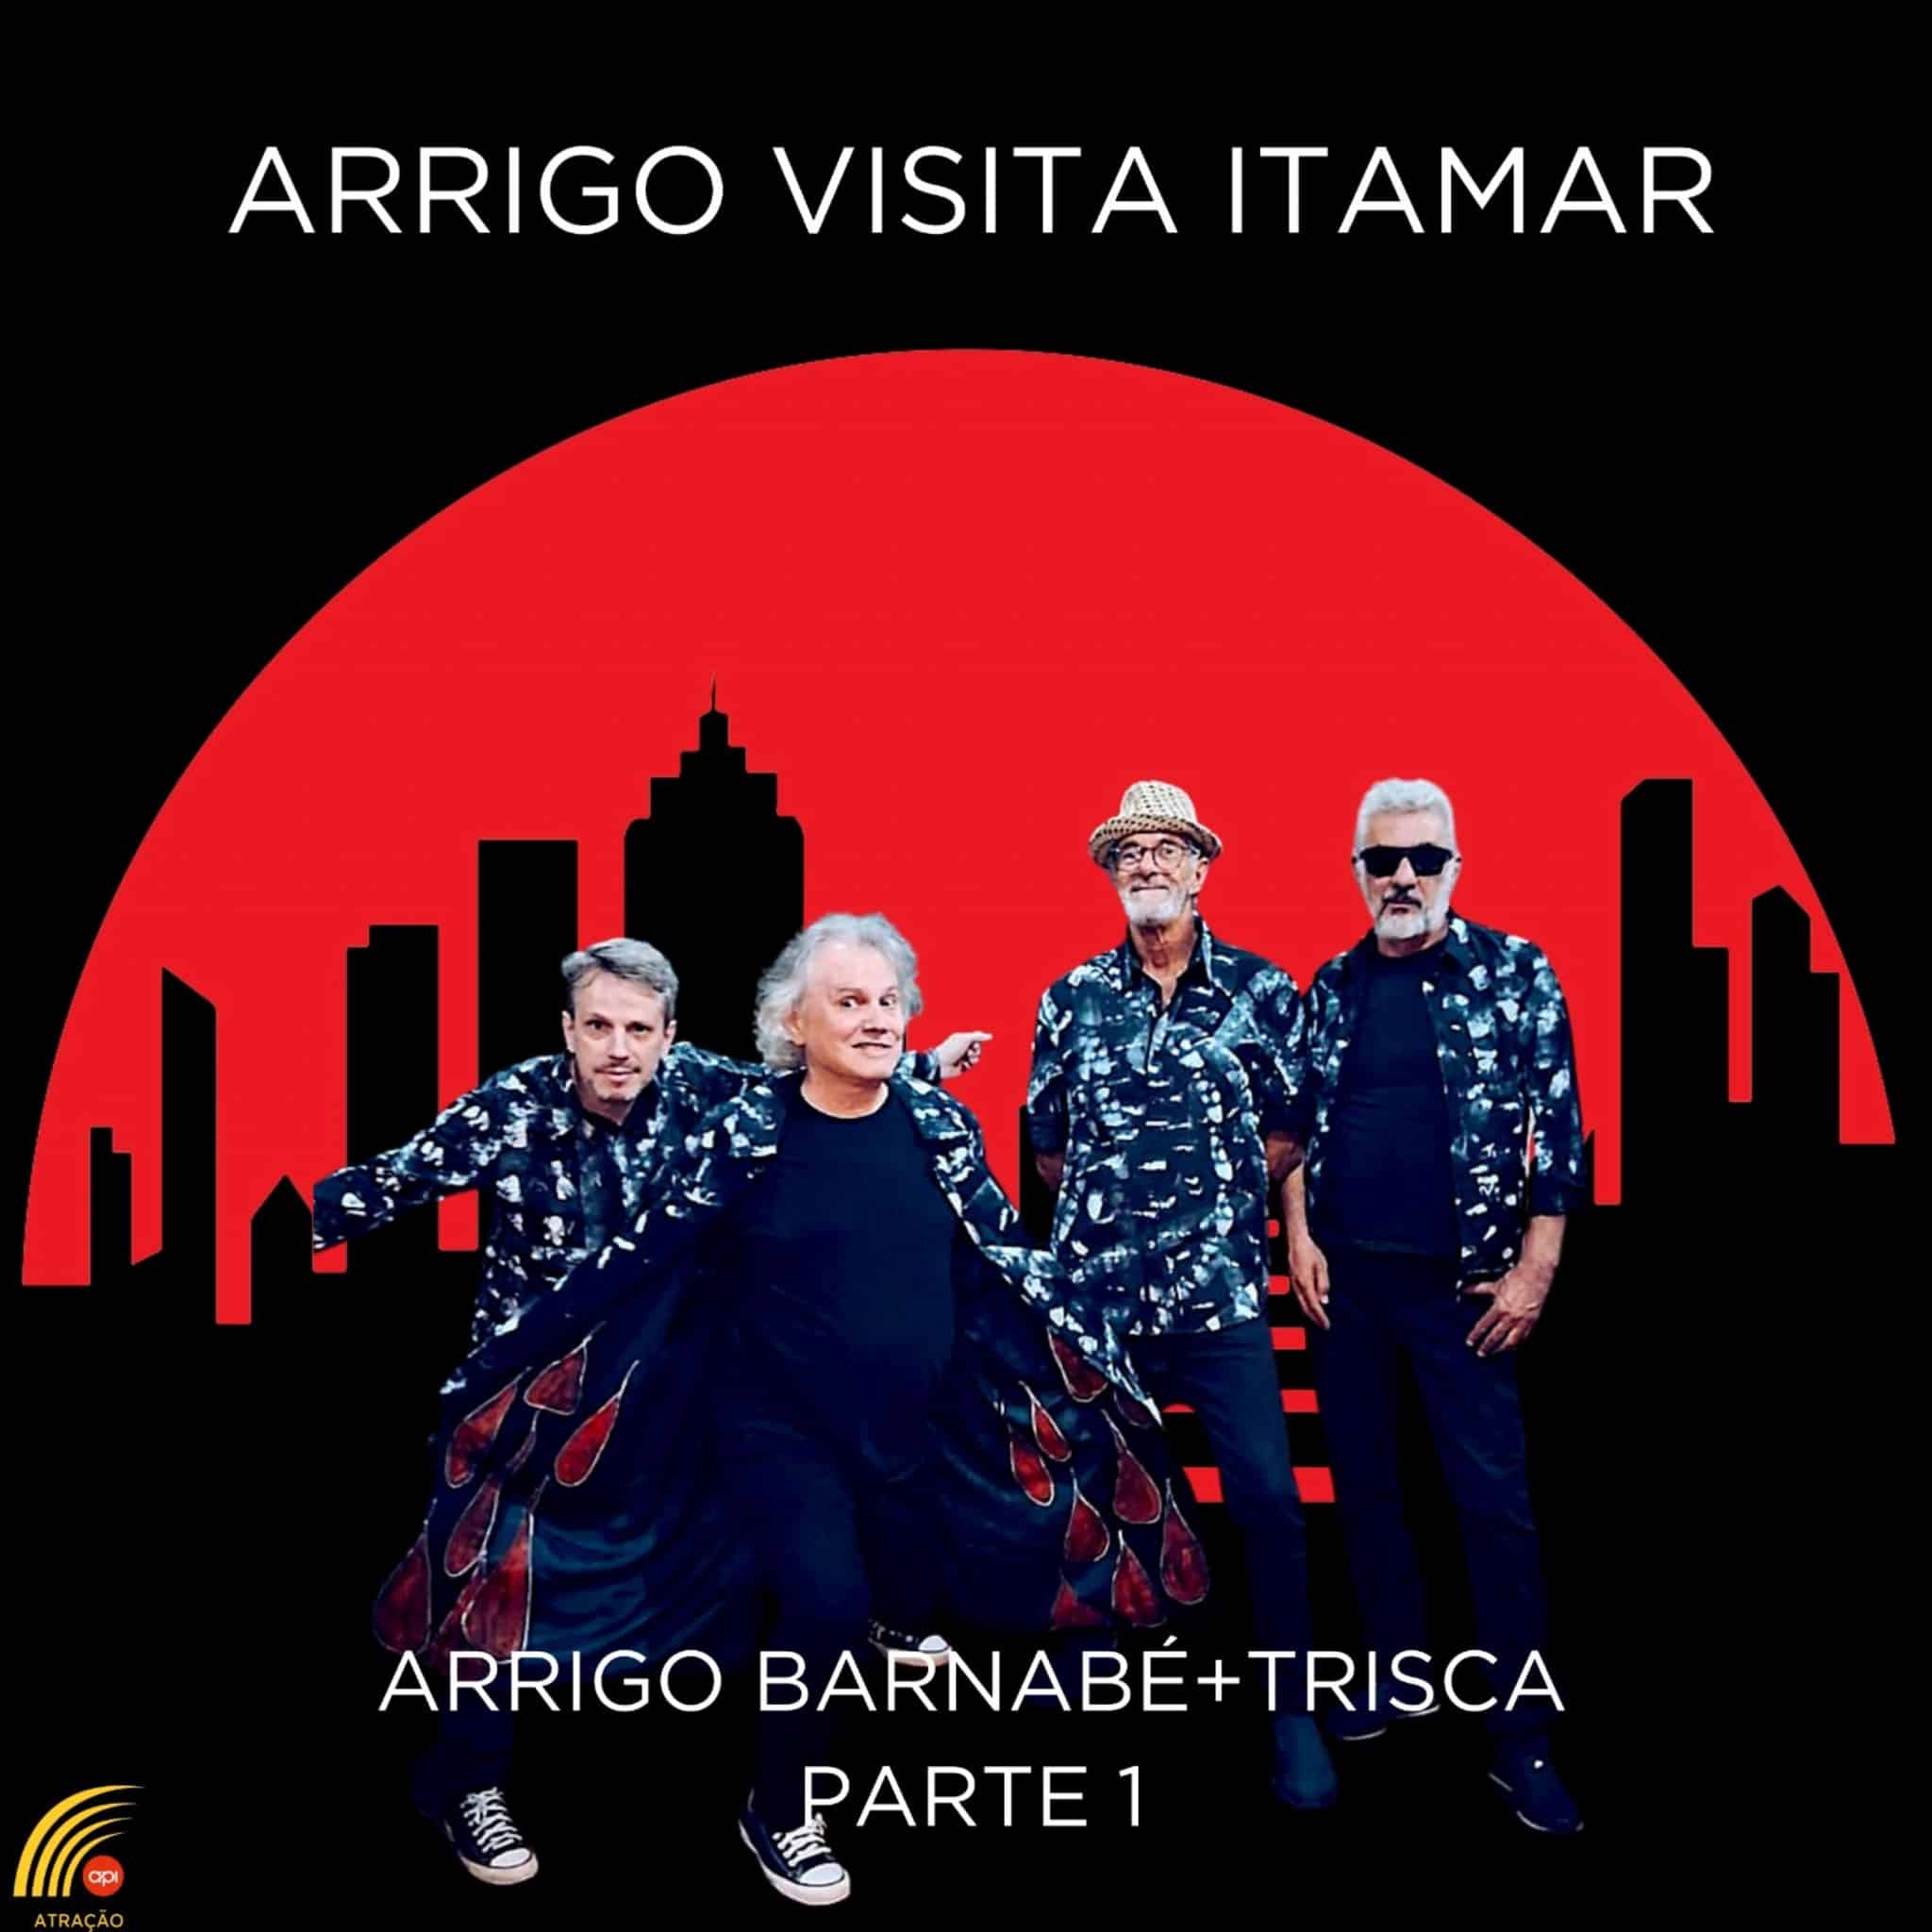 revistaprosaversoearte.com - Arrigo Barnabé revisita obra de Itamar Assumpção, primeiro EP chega nas plataformas de música